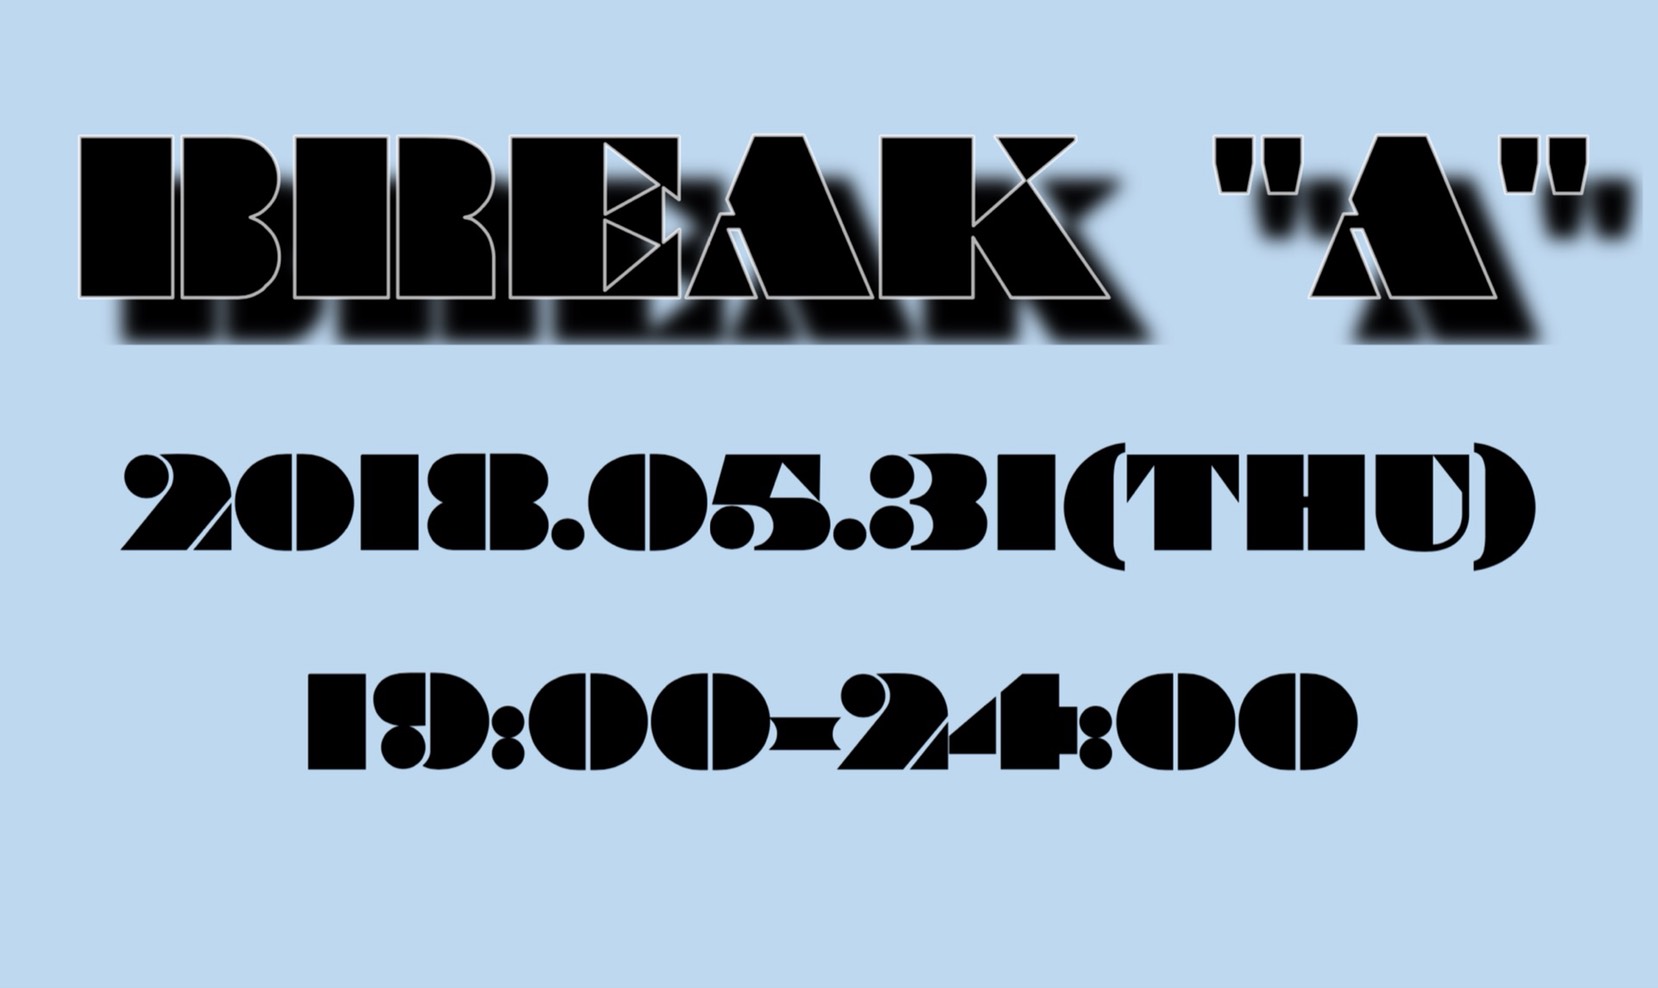 break 